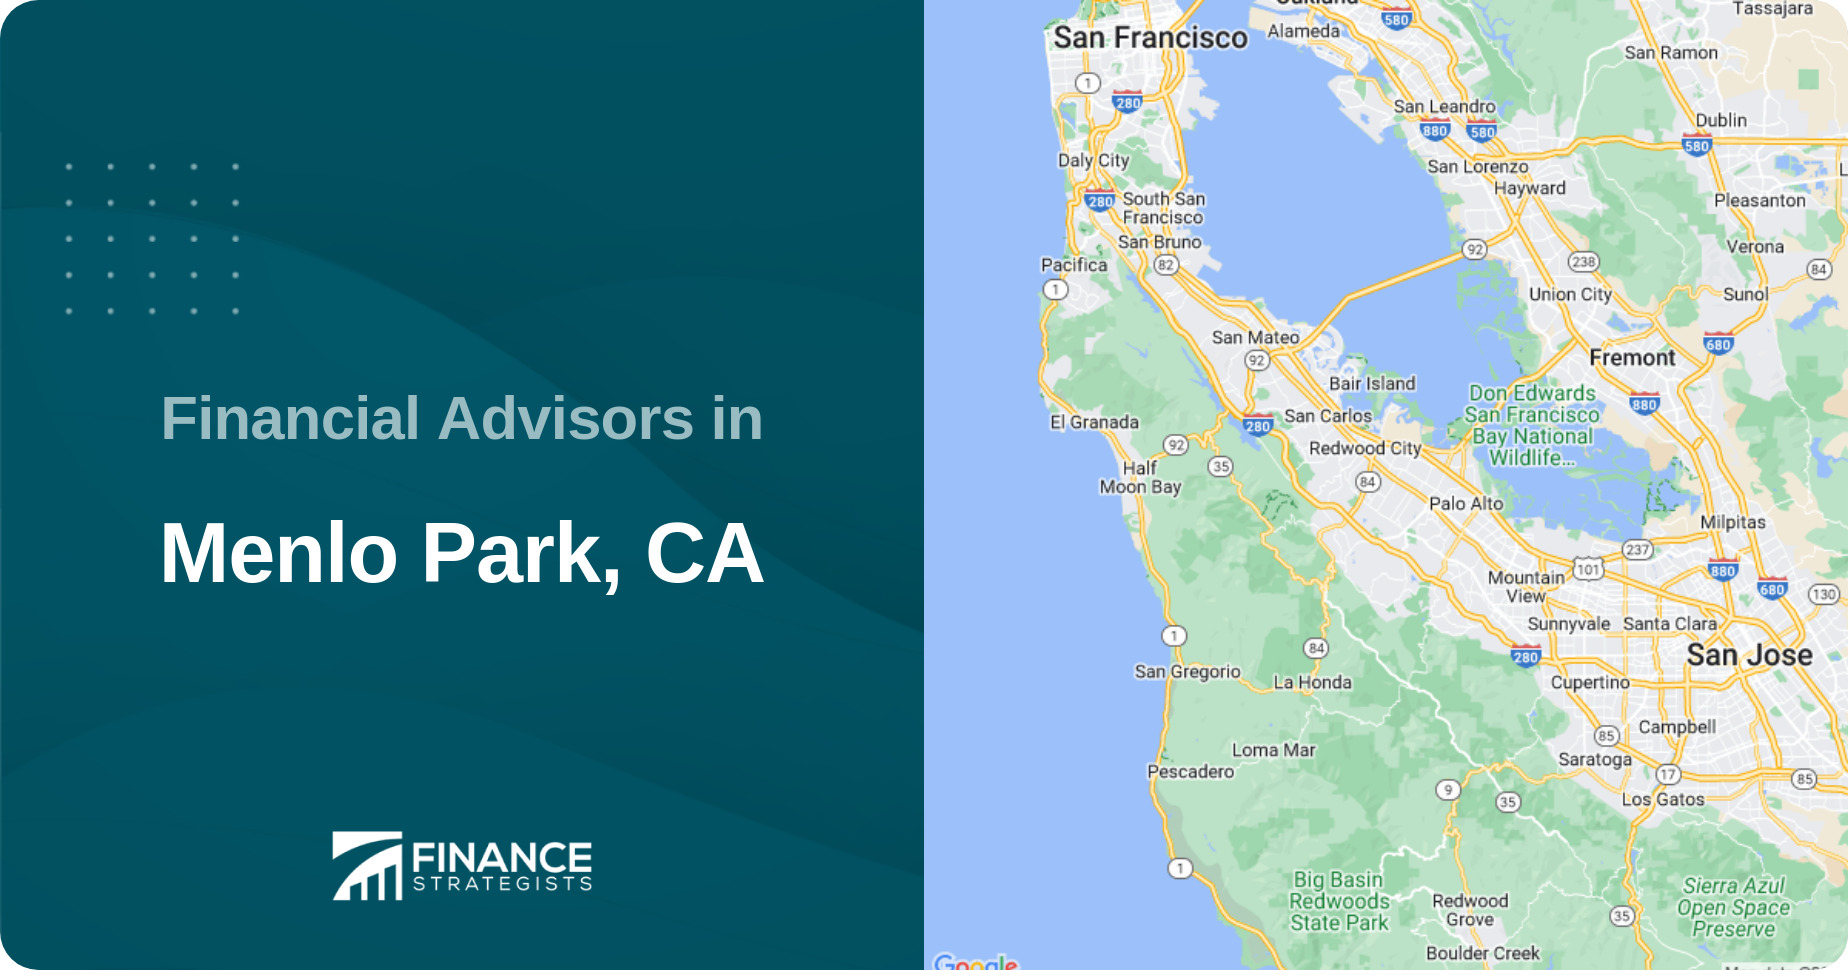 Financial Advisors in Menlo Park, CA